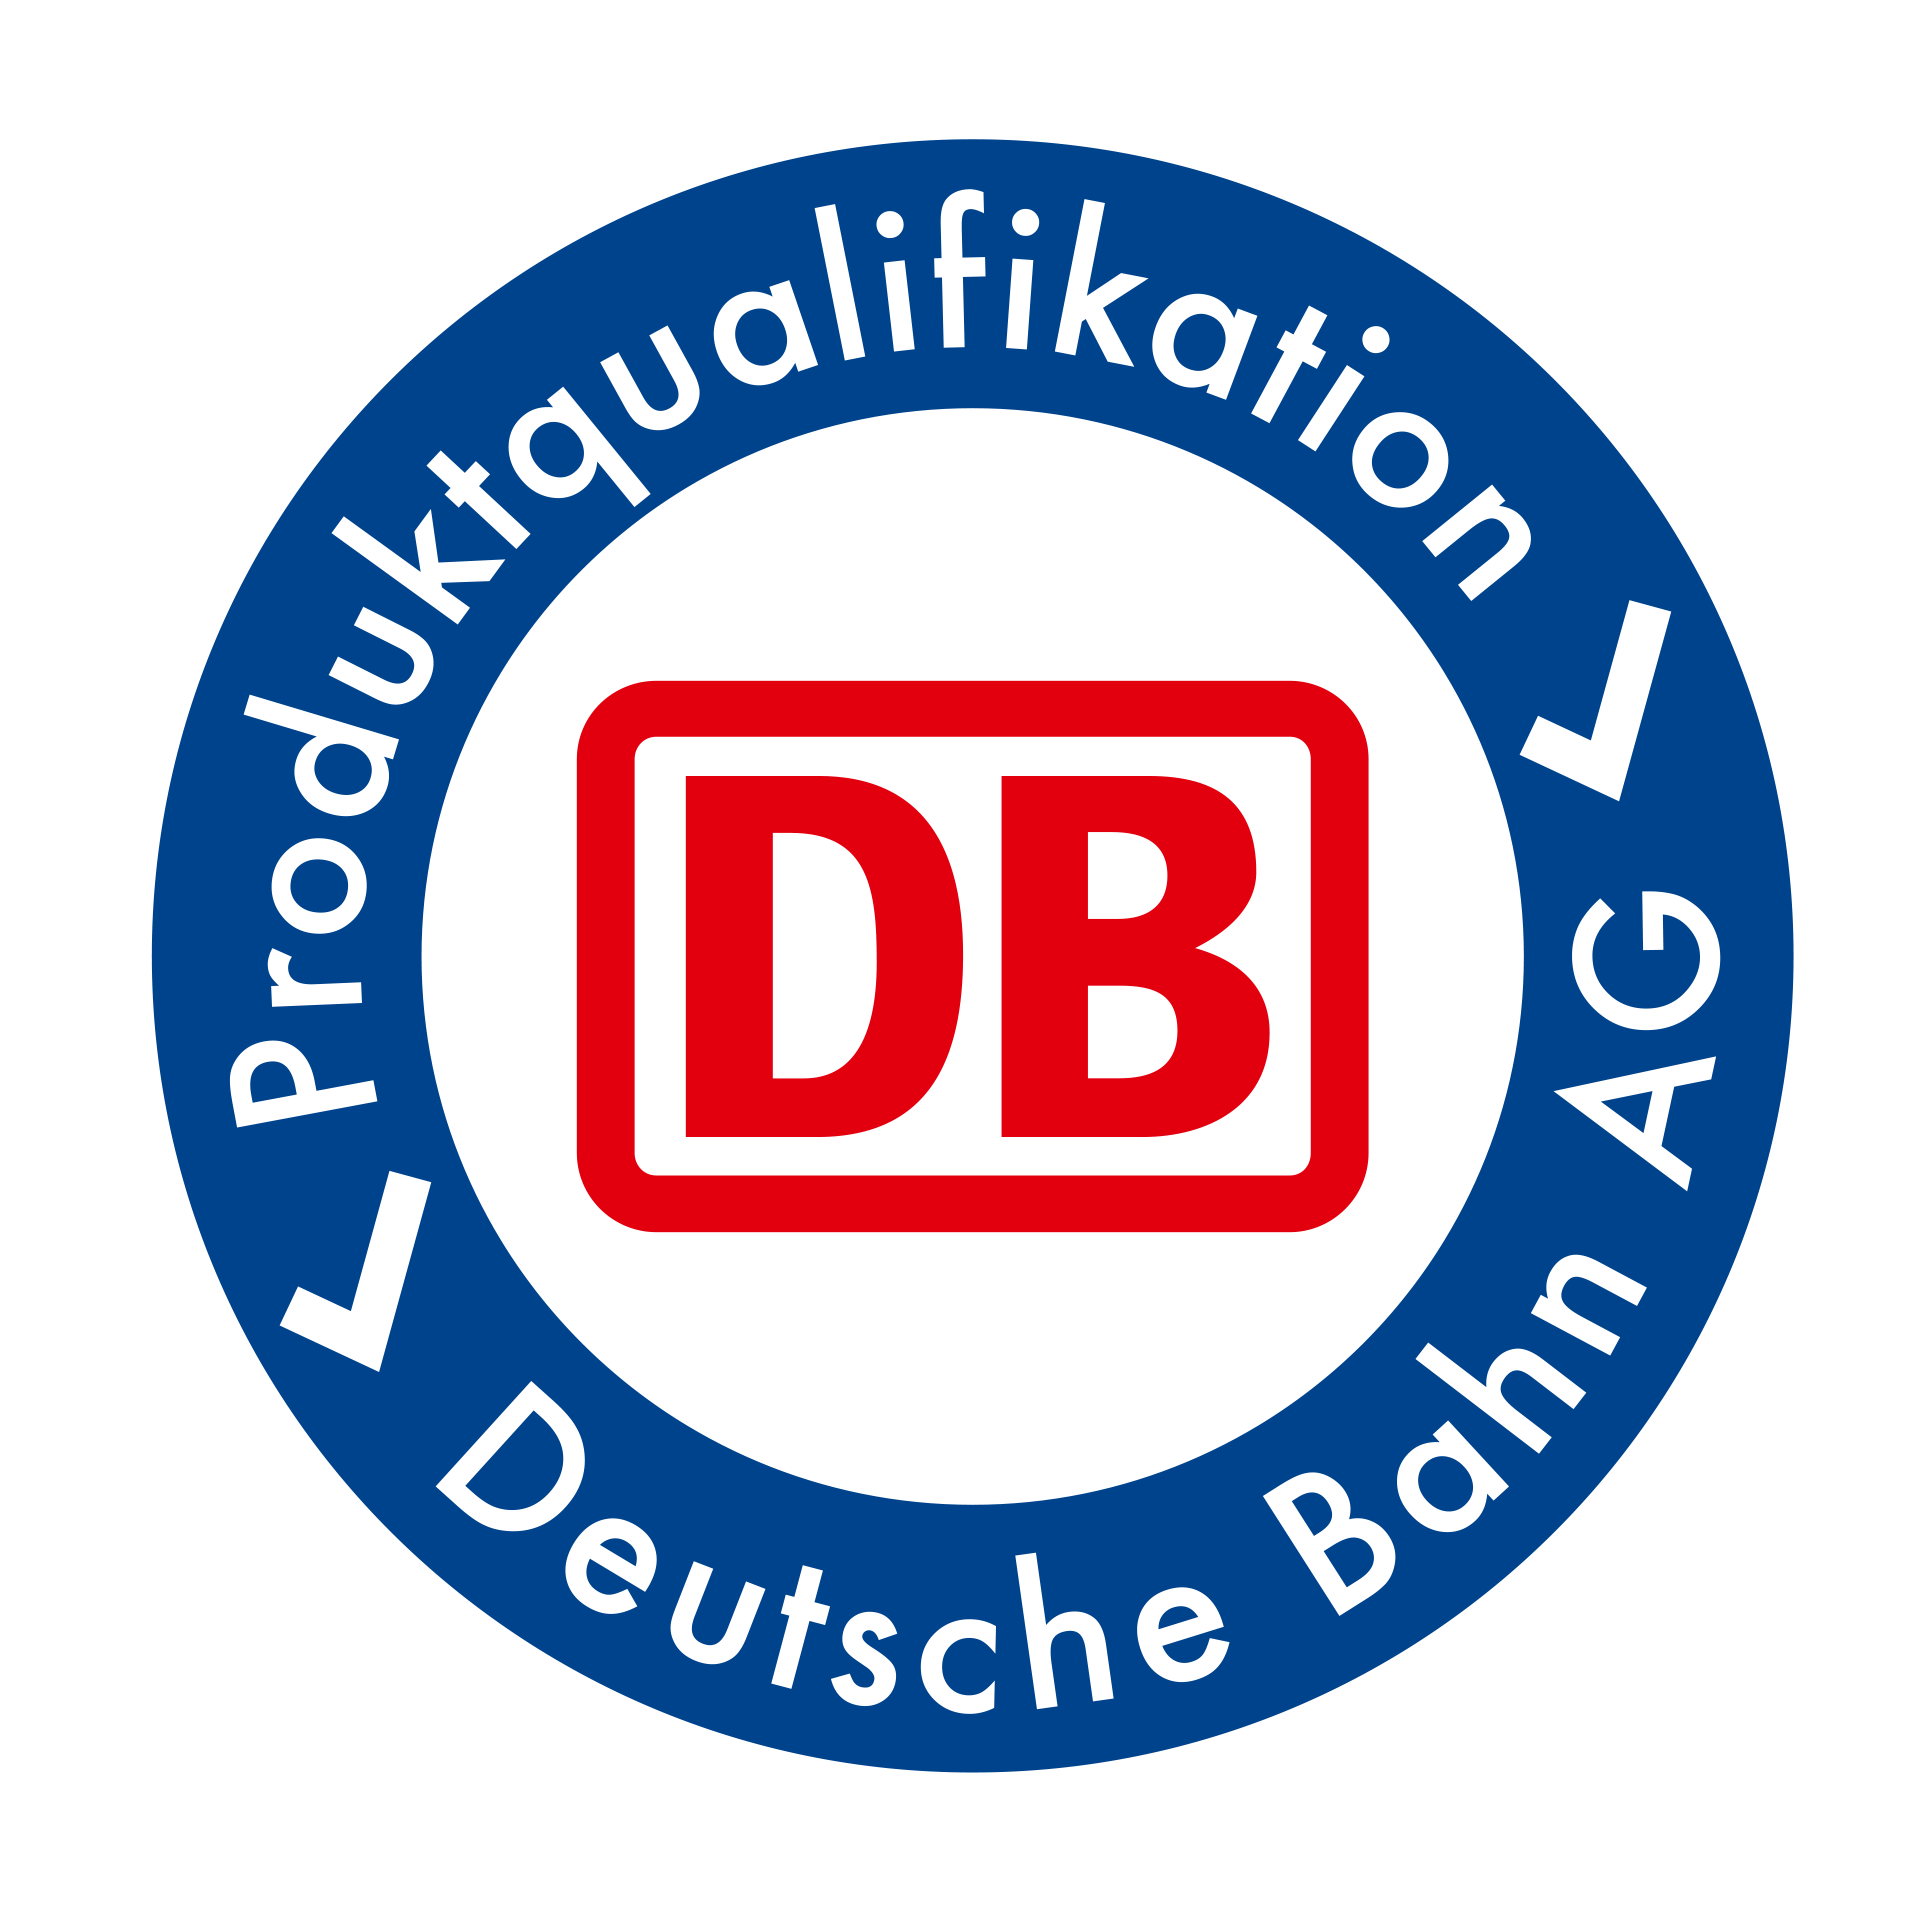 Produktqualifikation Deutsche Bahn AG